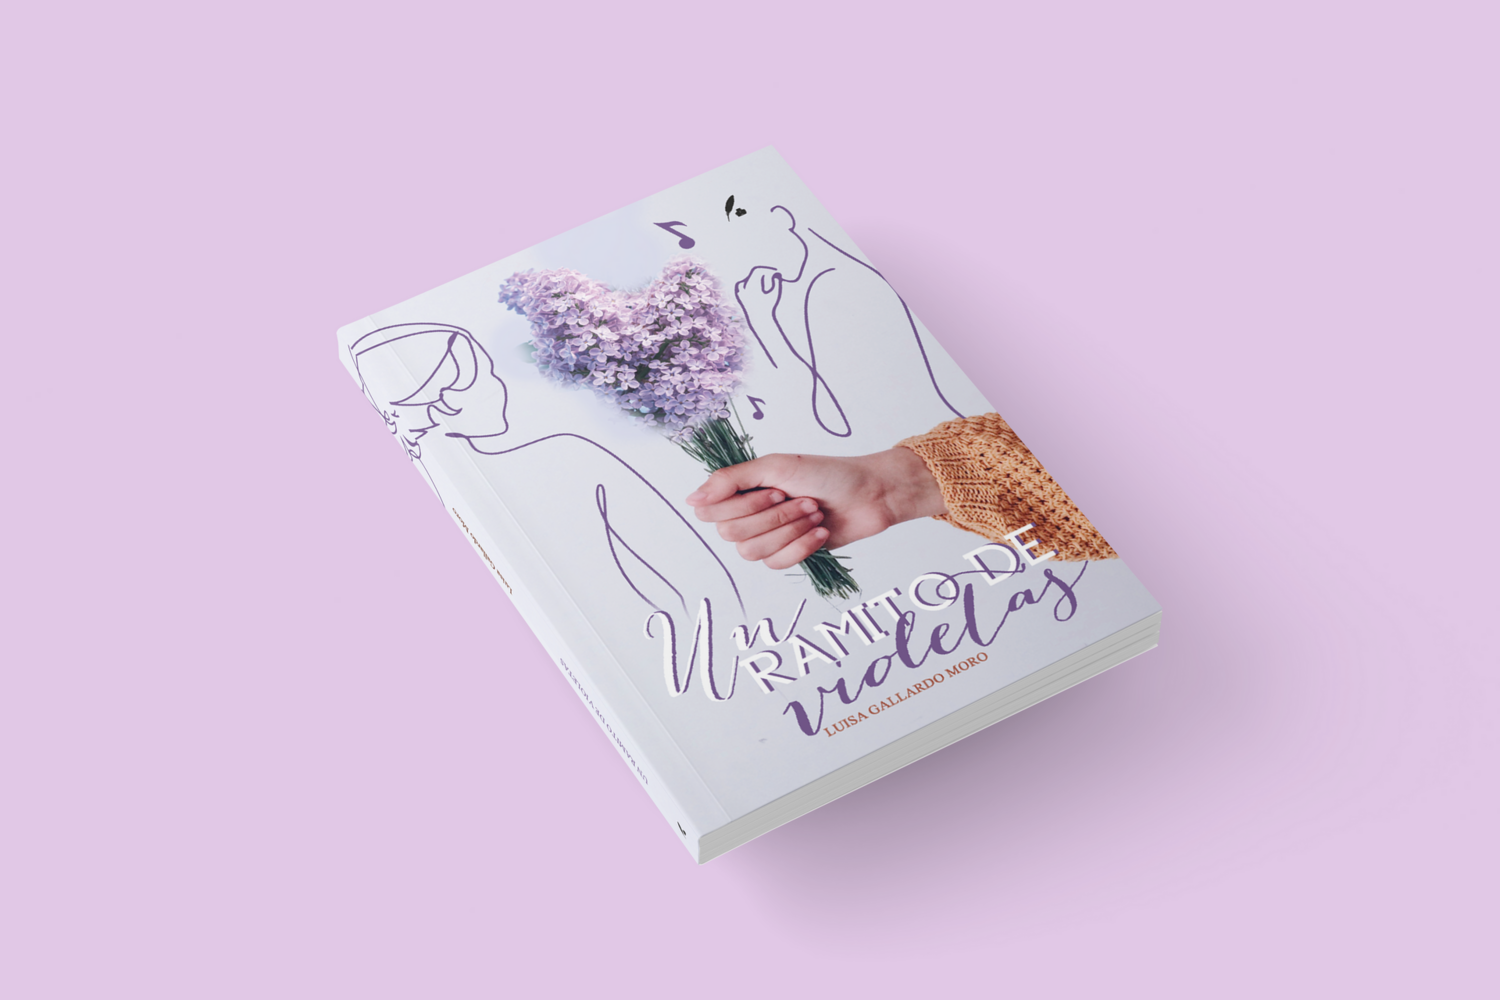 Un ramito de violetas / Luisa Gallardo